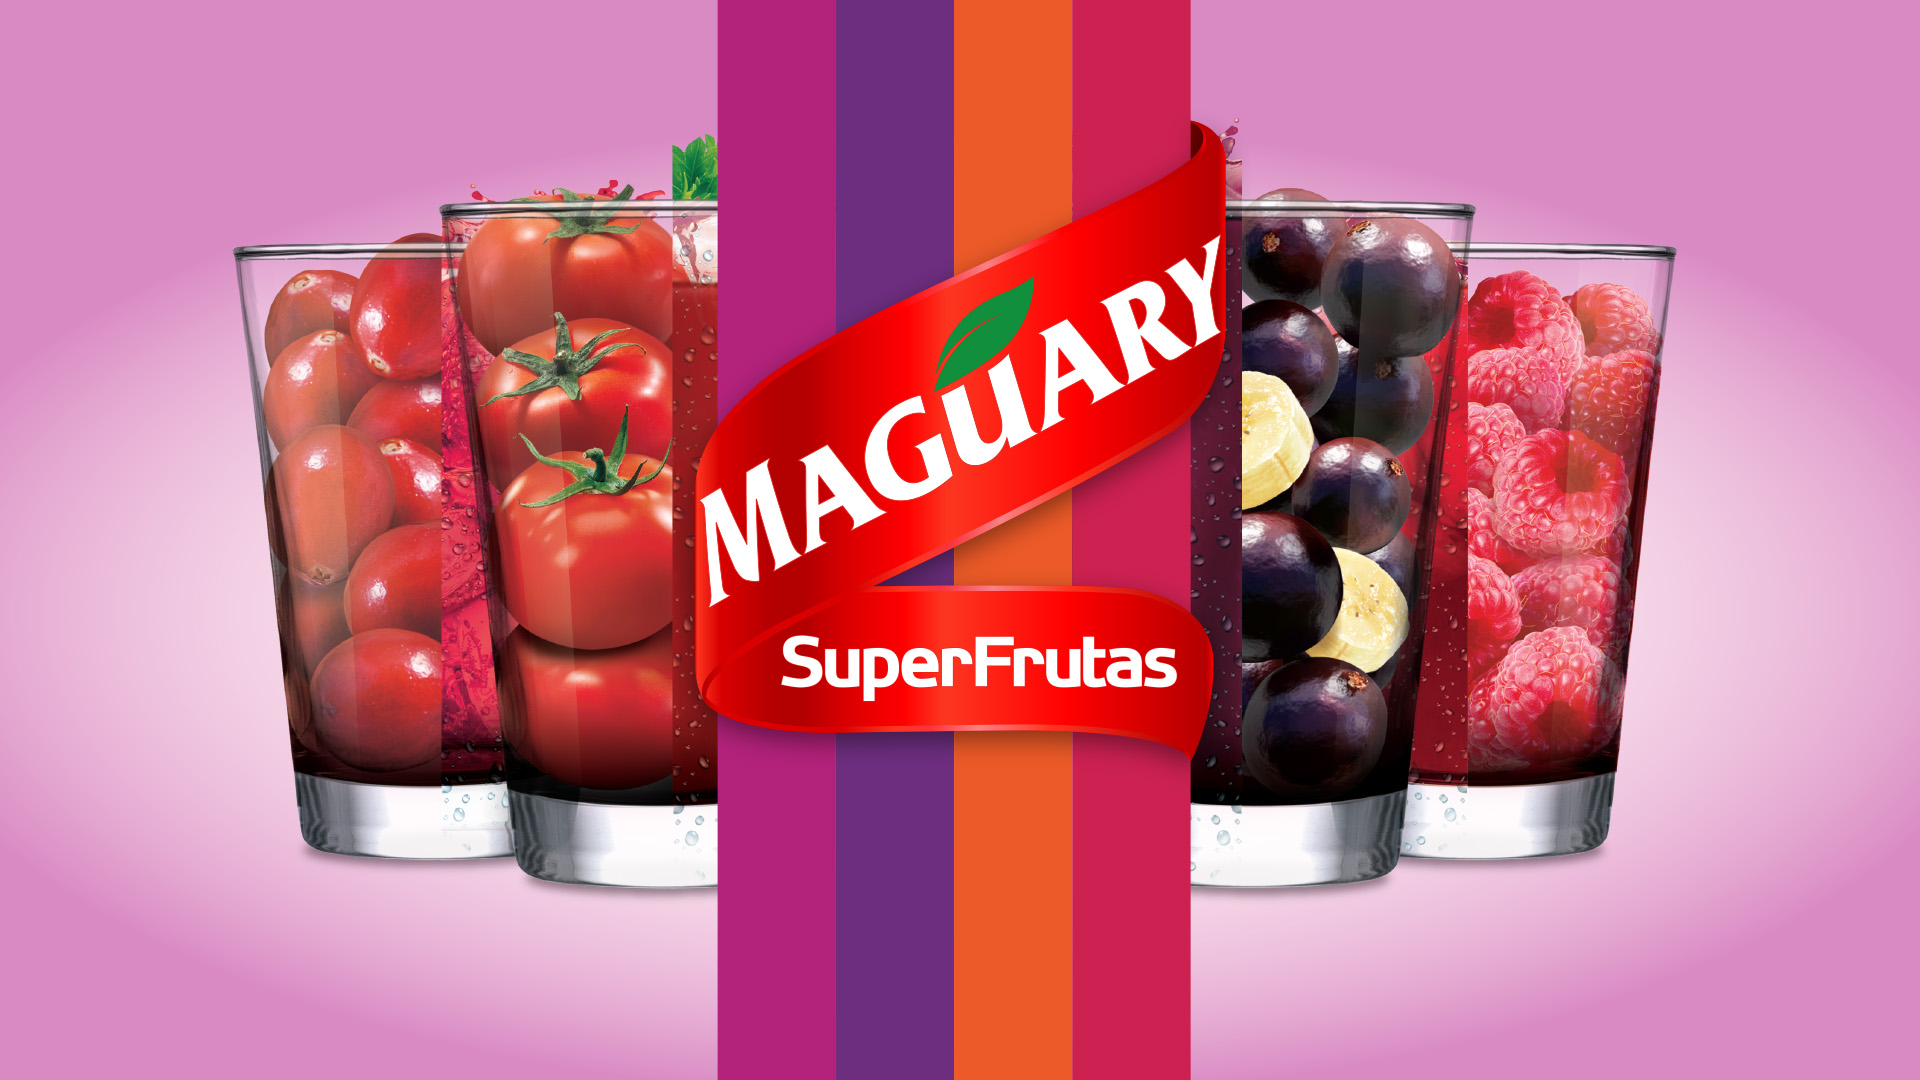 Imagem do key visual para press kit de lançamento de produtos SuperFrutas Maguary.